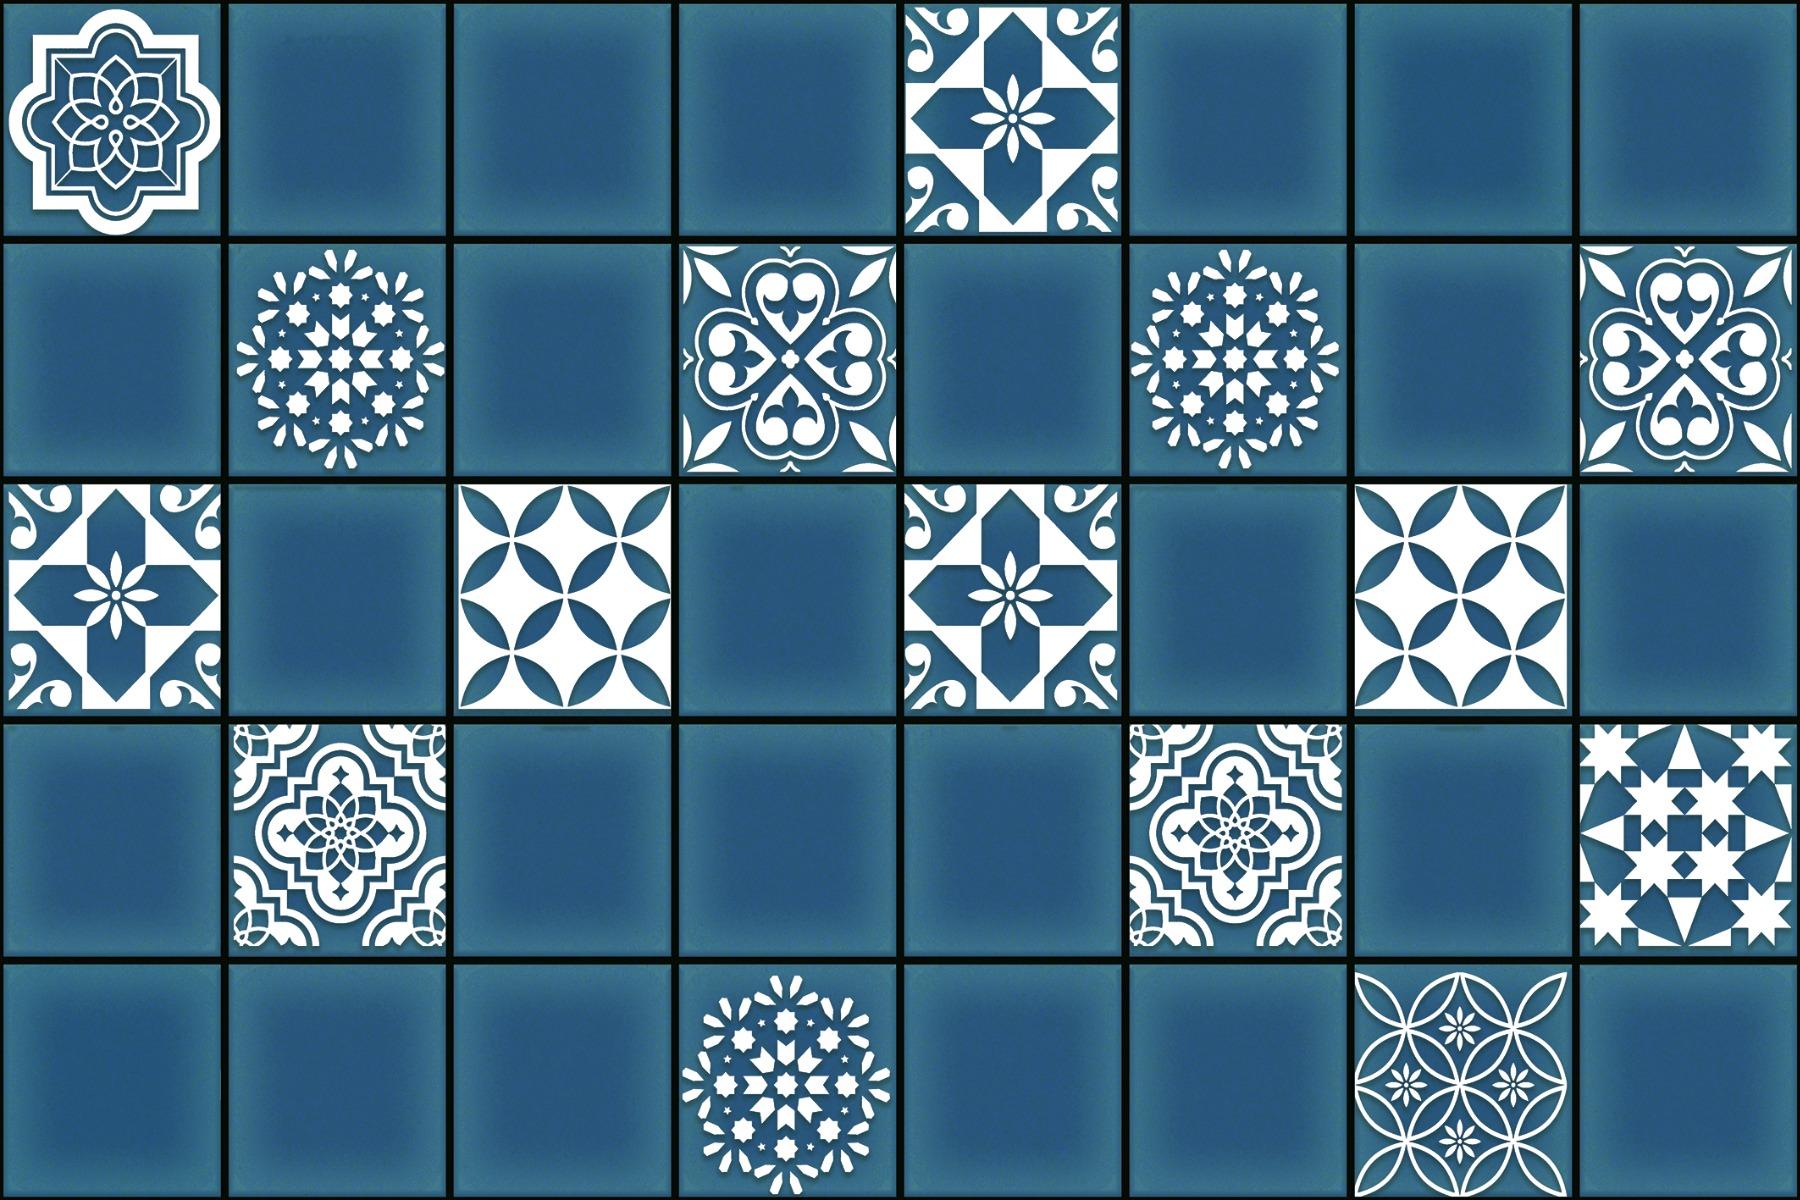 Ceramic Tiles for Bathroom Tiles, Living Room Tiles, Kitchen Tiles, Bedroom Tiles, Balcony Tiles